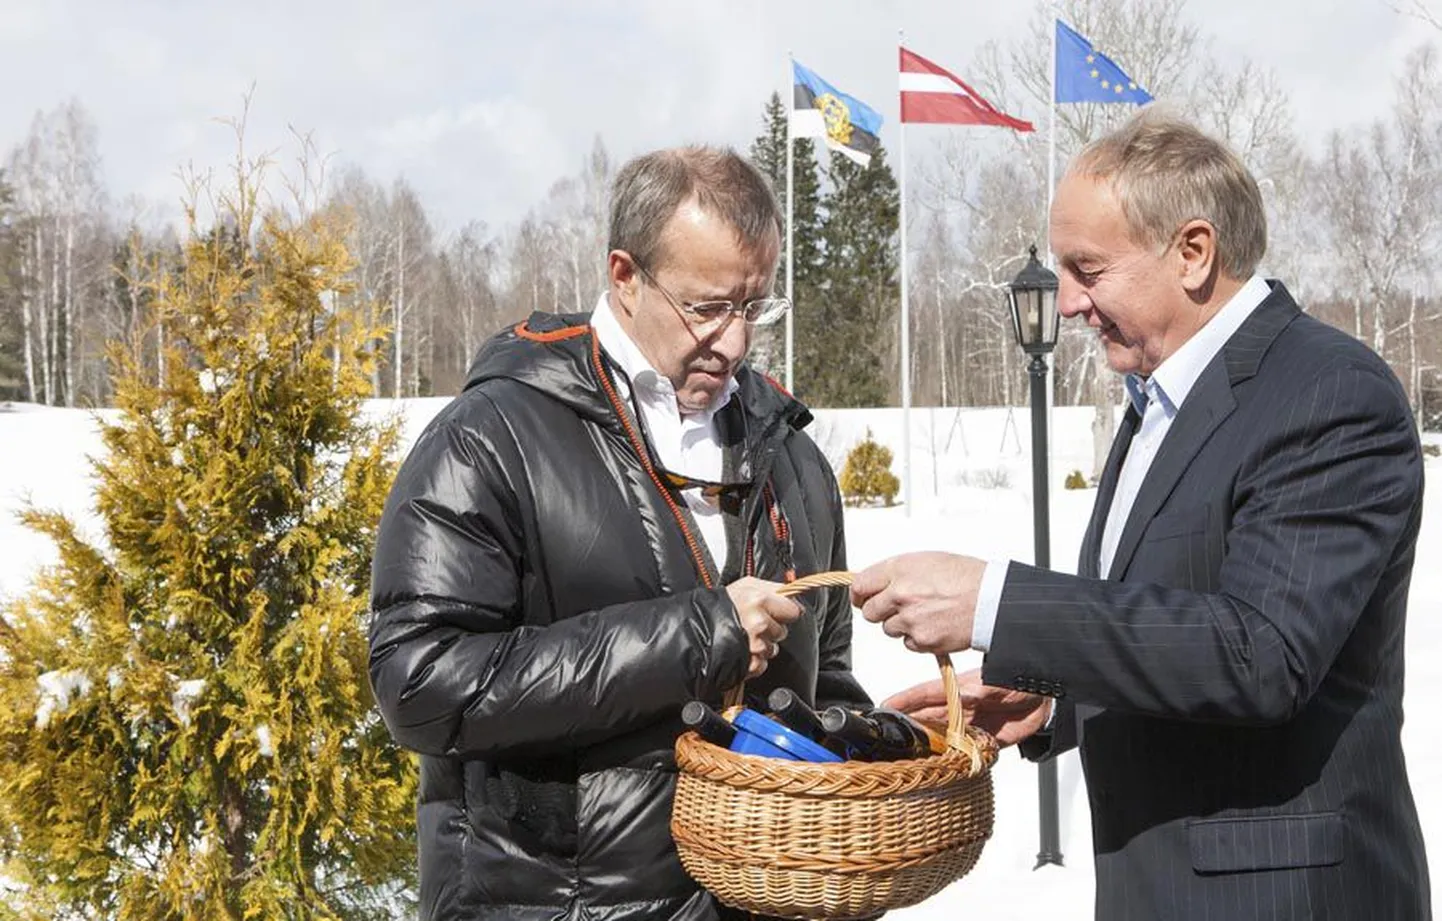 Läti president Andris Berzinš tõi Toomas Hendrik Ilvesele külakostiks paremaid palu Läti toiduainete tootjatelt.